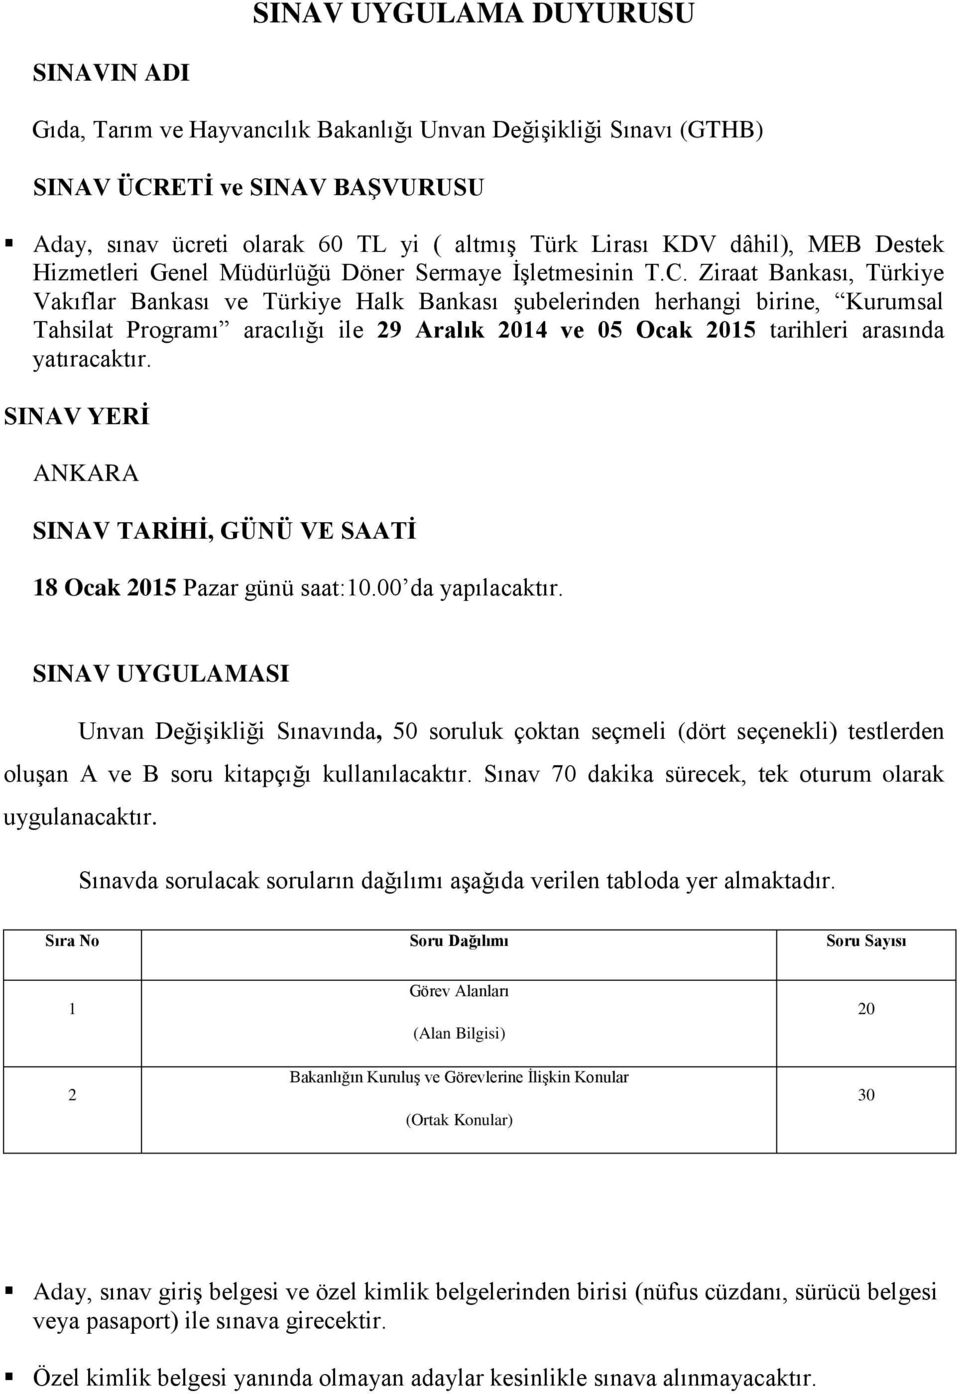 Ziraat Bankası, Türkiye Vakıflar Bankası ve Türkiye Halk Bankası şubelerinden herhangi birine, Kurumsal Tahsilat Programı aracılığı ile 29 Aralık 2014 ve 05 Ocak 2015 tarihleri arasında yatıracaktır.